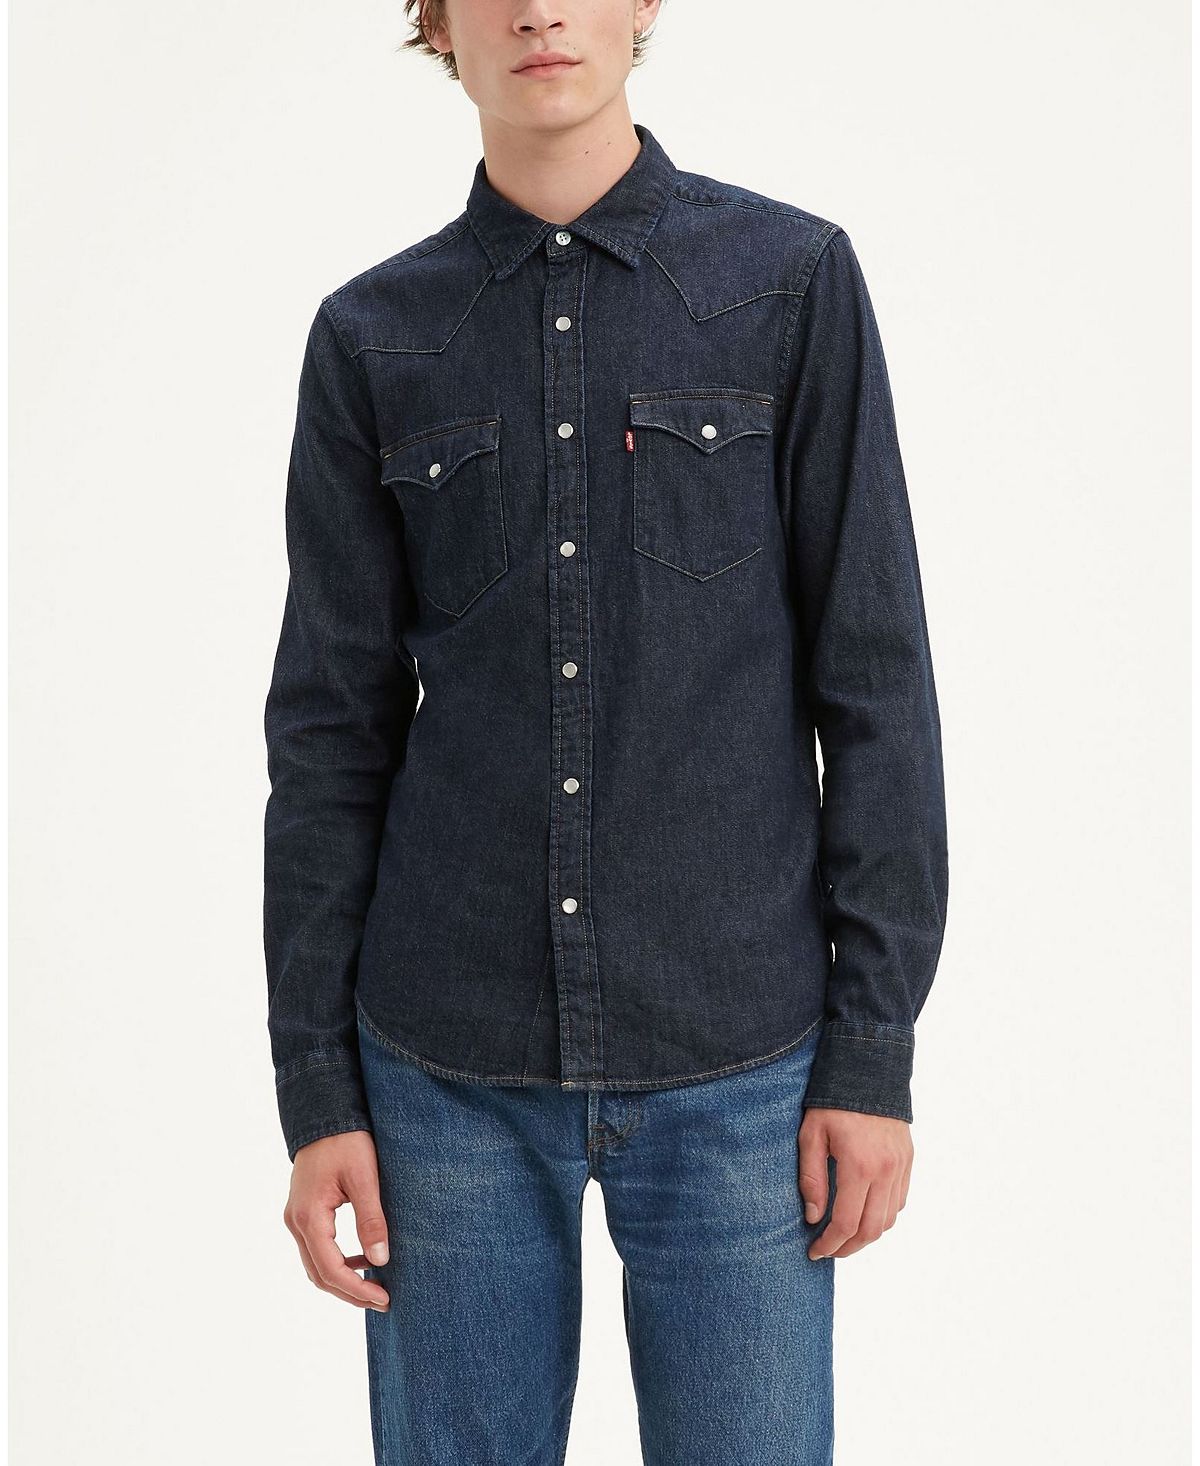 Мужская классическая чистая джинсовая рубашка стандартного кроя в стиле вестерн Levi's, мульти цена и фото